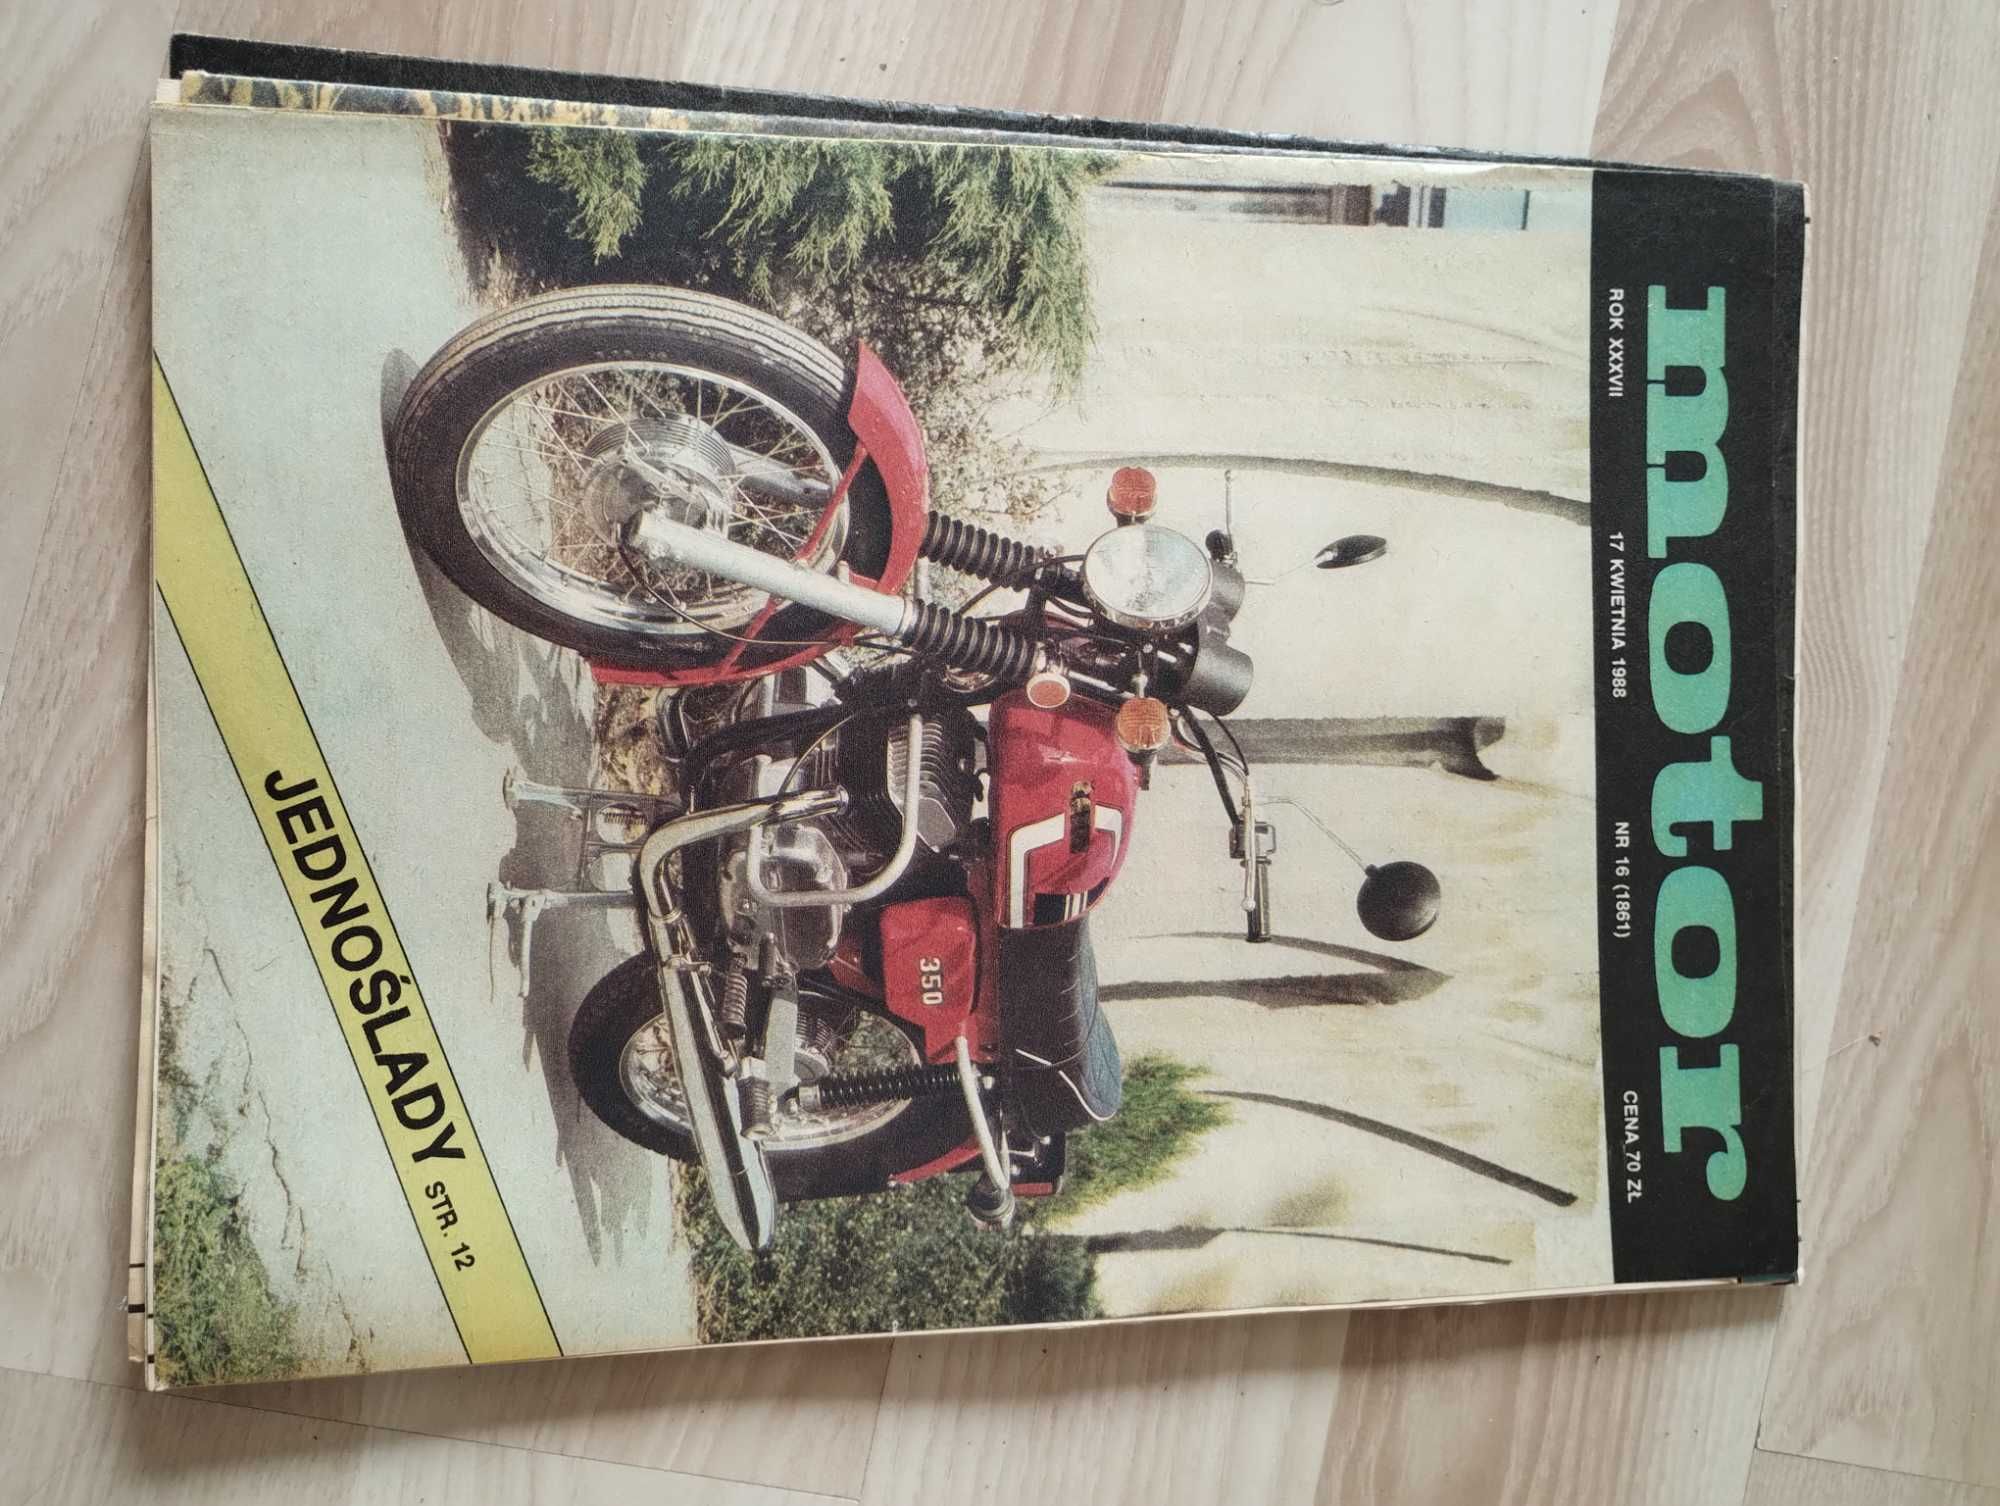 Stare czasopisma Motor